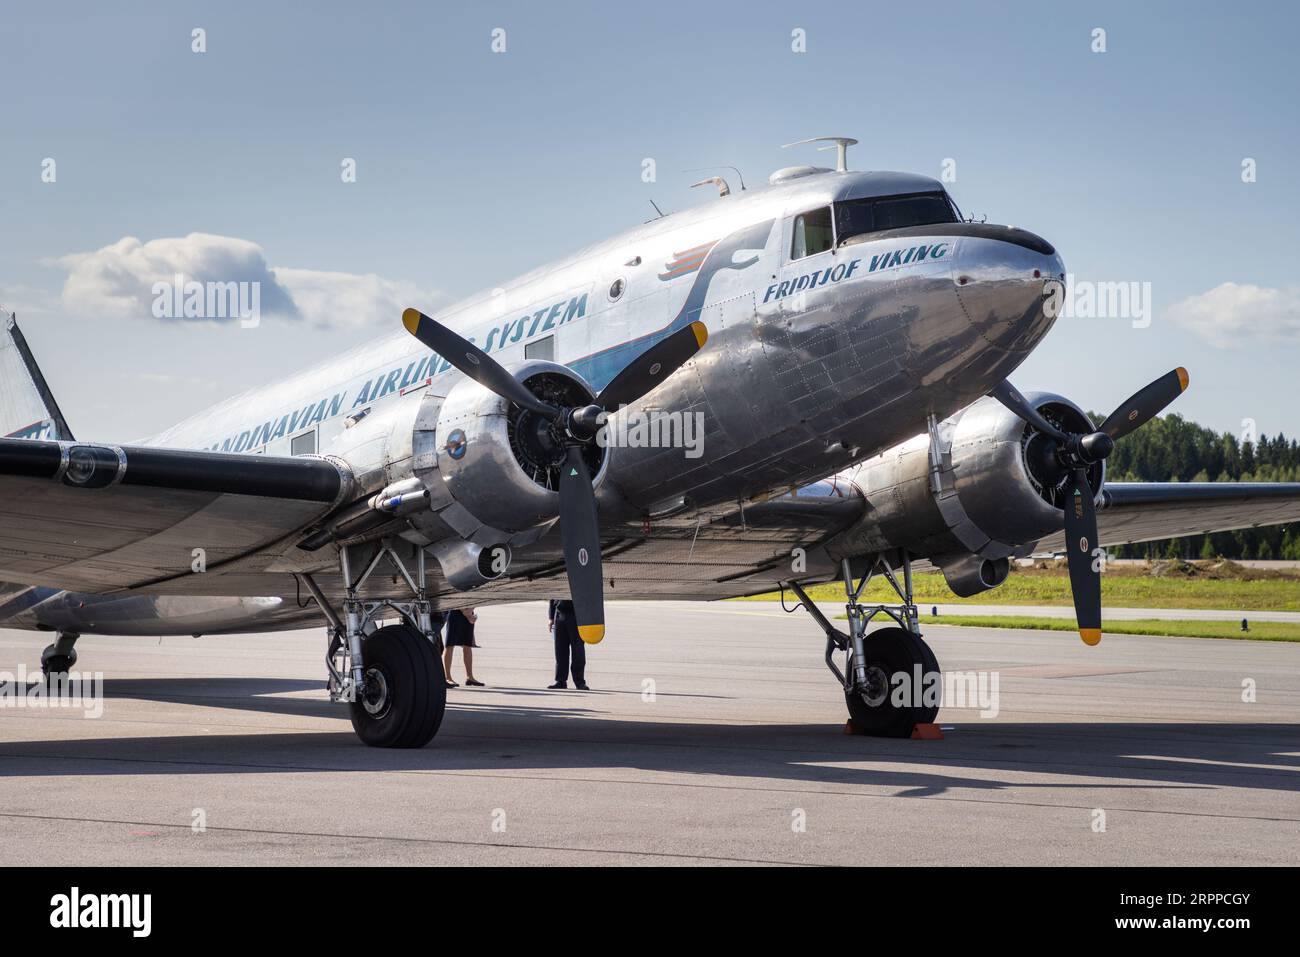 Se-CFP - Douglas DC-3, Daisy, all'aeroporto di Örebro, Örebro, Svezia. Il DC-3 Daisy Aircraft è stato prodotto nel 1943 ed è un vero veterano. Ha partecipato alla seconda guerra mondiale, dove ha partecipato, tra le altre cose, agli atterraggi aerei del D-Day il 6 giugno 1944. Foto Stock